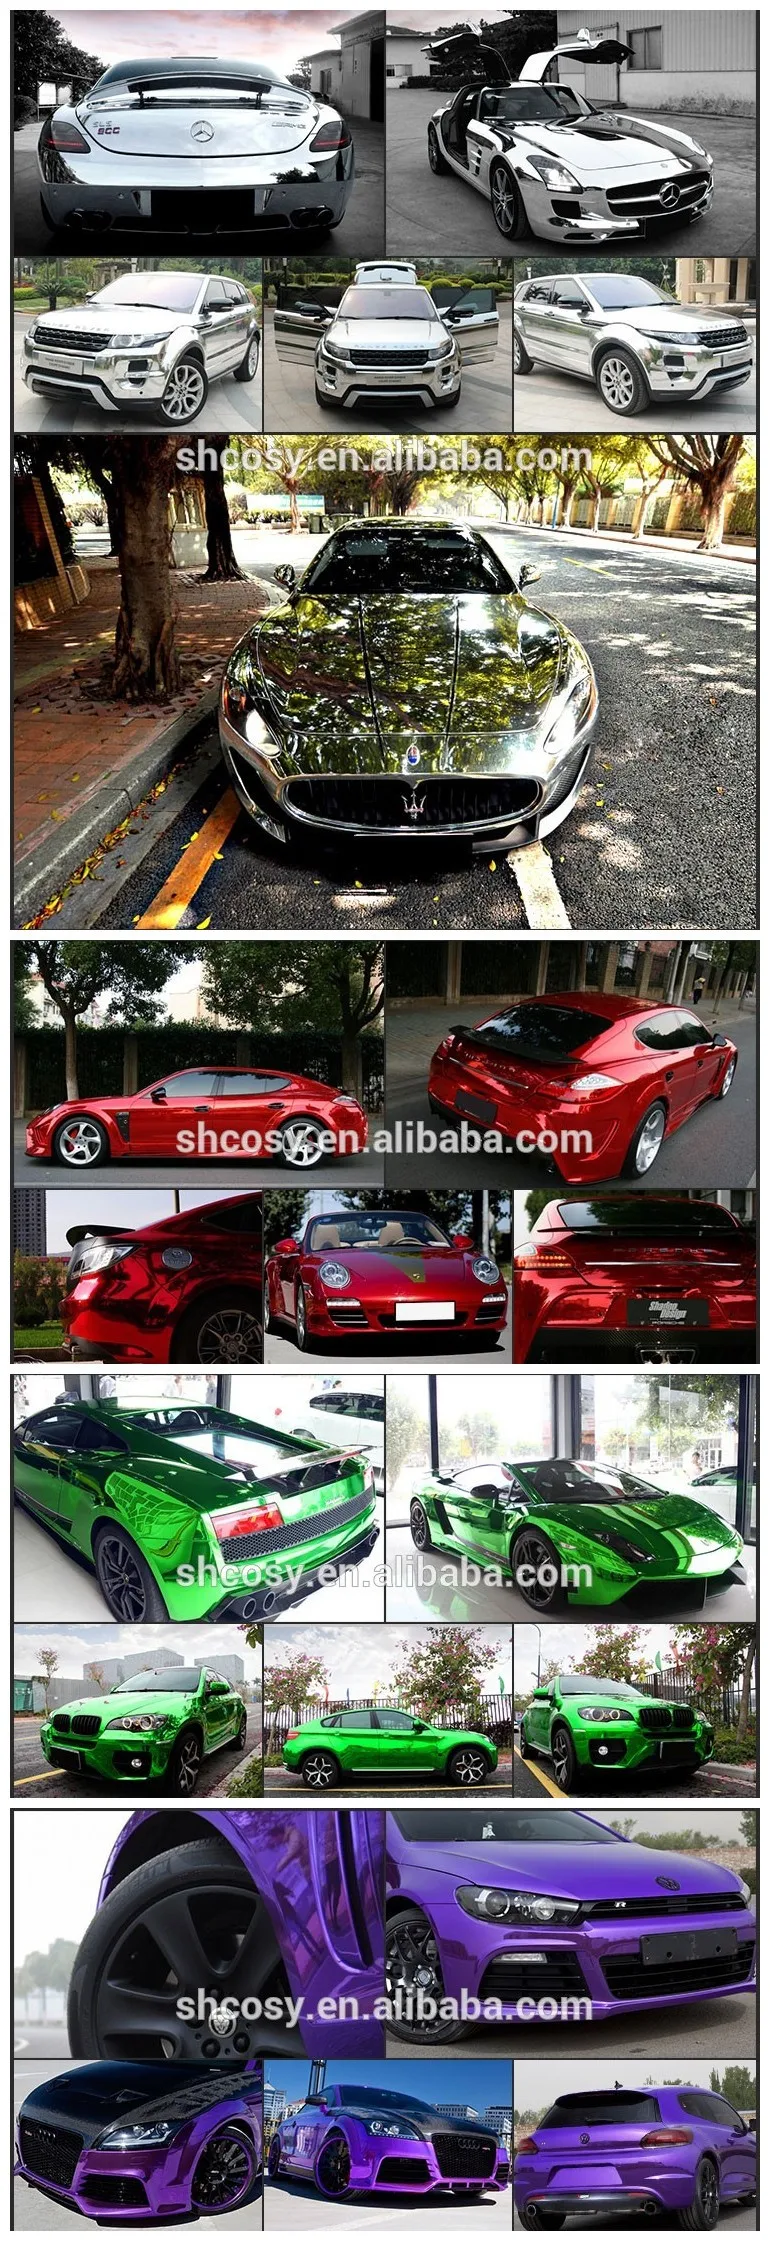 カーラッピング16 Sフィルムフルボディステッカー変更車の色 熱変色ビニール Buy カーステッカー用変える車ボディカラー 車の変色おもちゃ車 熱変色ビニール Product On Alibaba Com